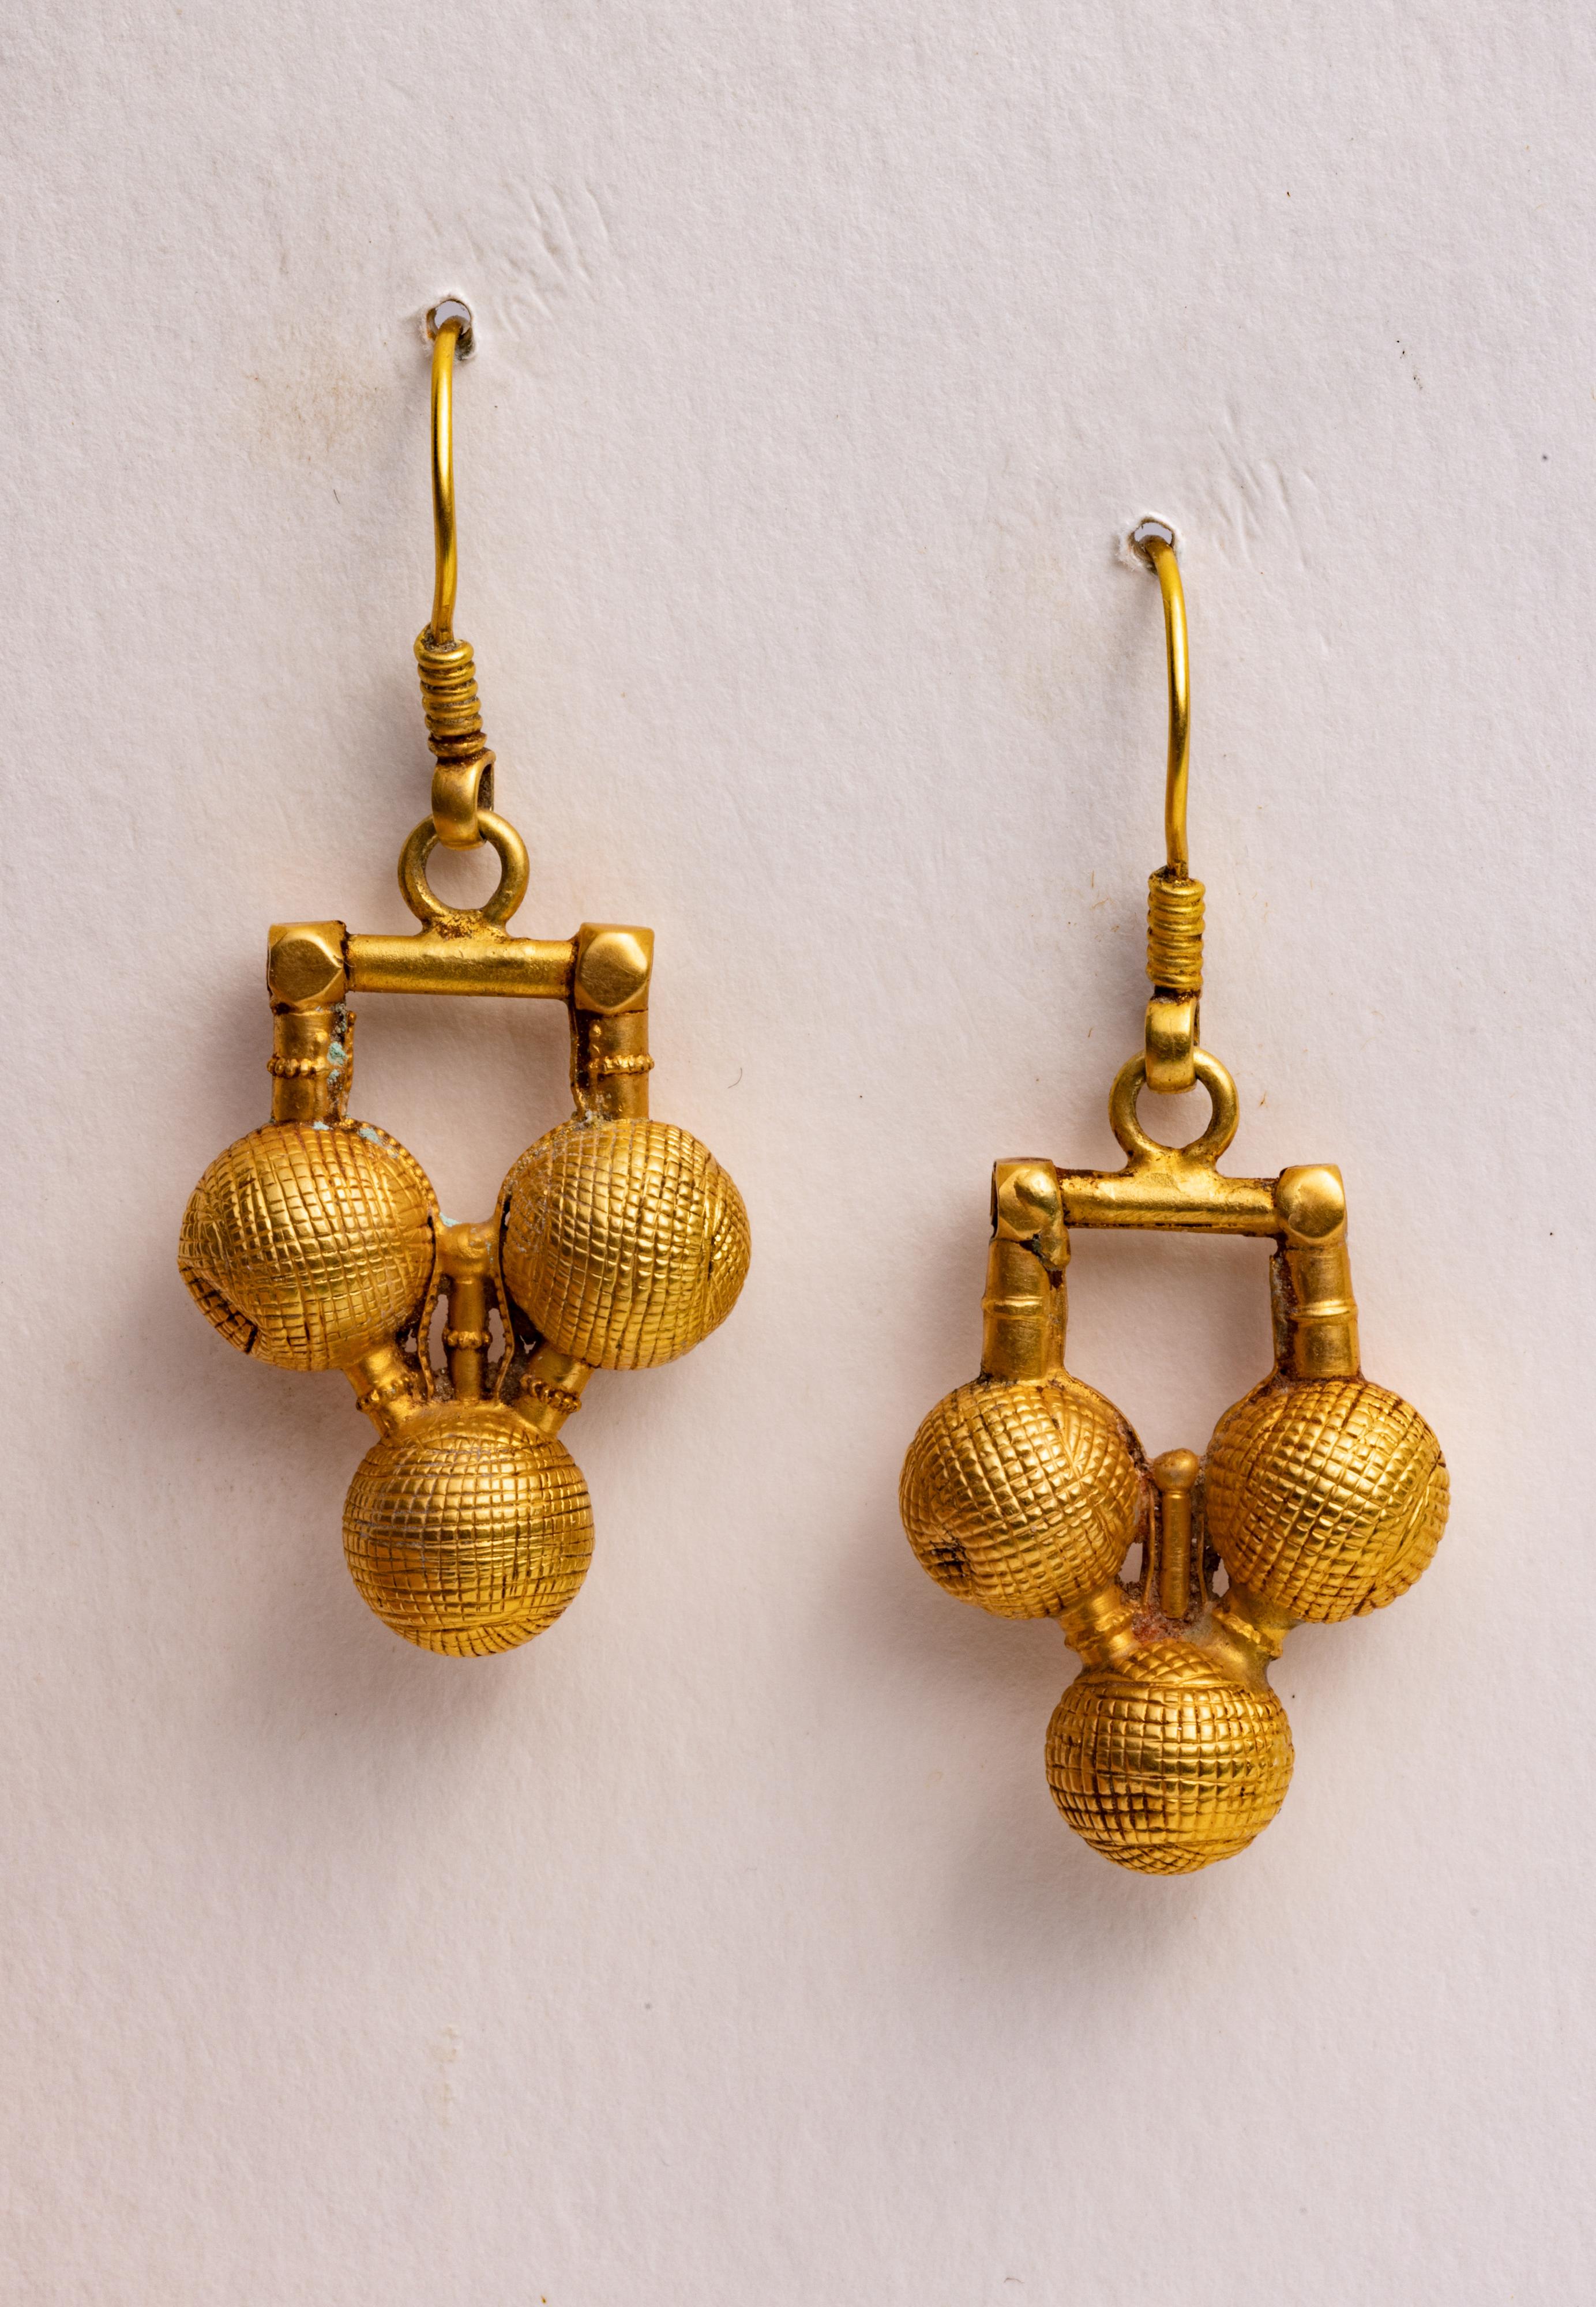 Ein Paar südindische Ohrringe aus 18 Karat Gold, die im Wachsausschmelzverfahren handgefertigt wurden.  Französischer Draht für gepiercte Ohren.  

Die Schmuckkollektion wird von Deborah Lockhart Phillips entworfen und hergestellt. Durch ihre